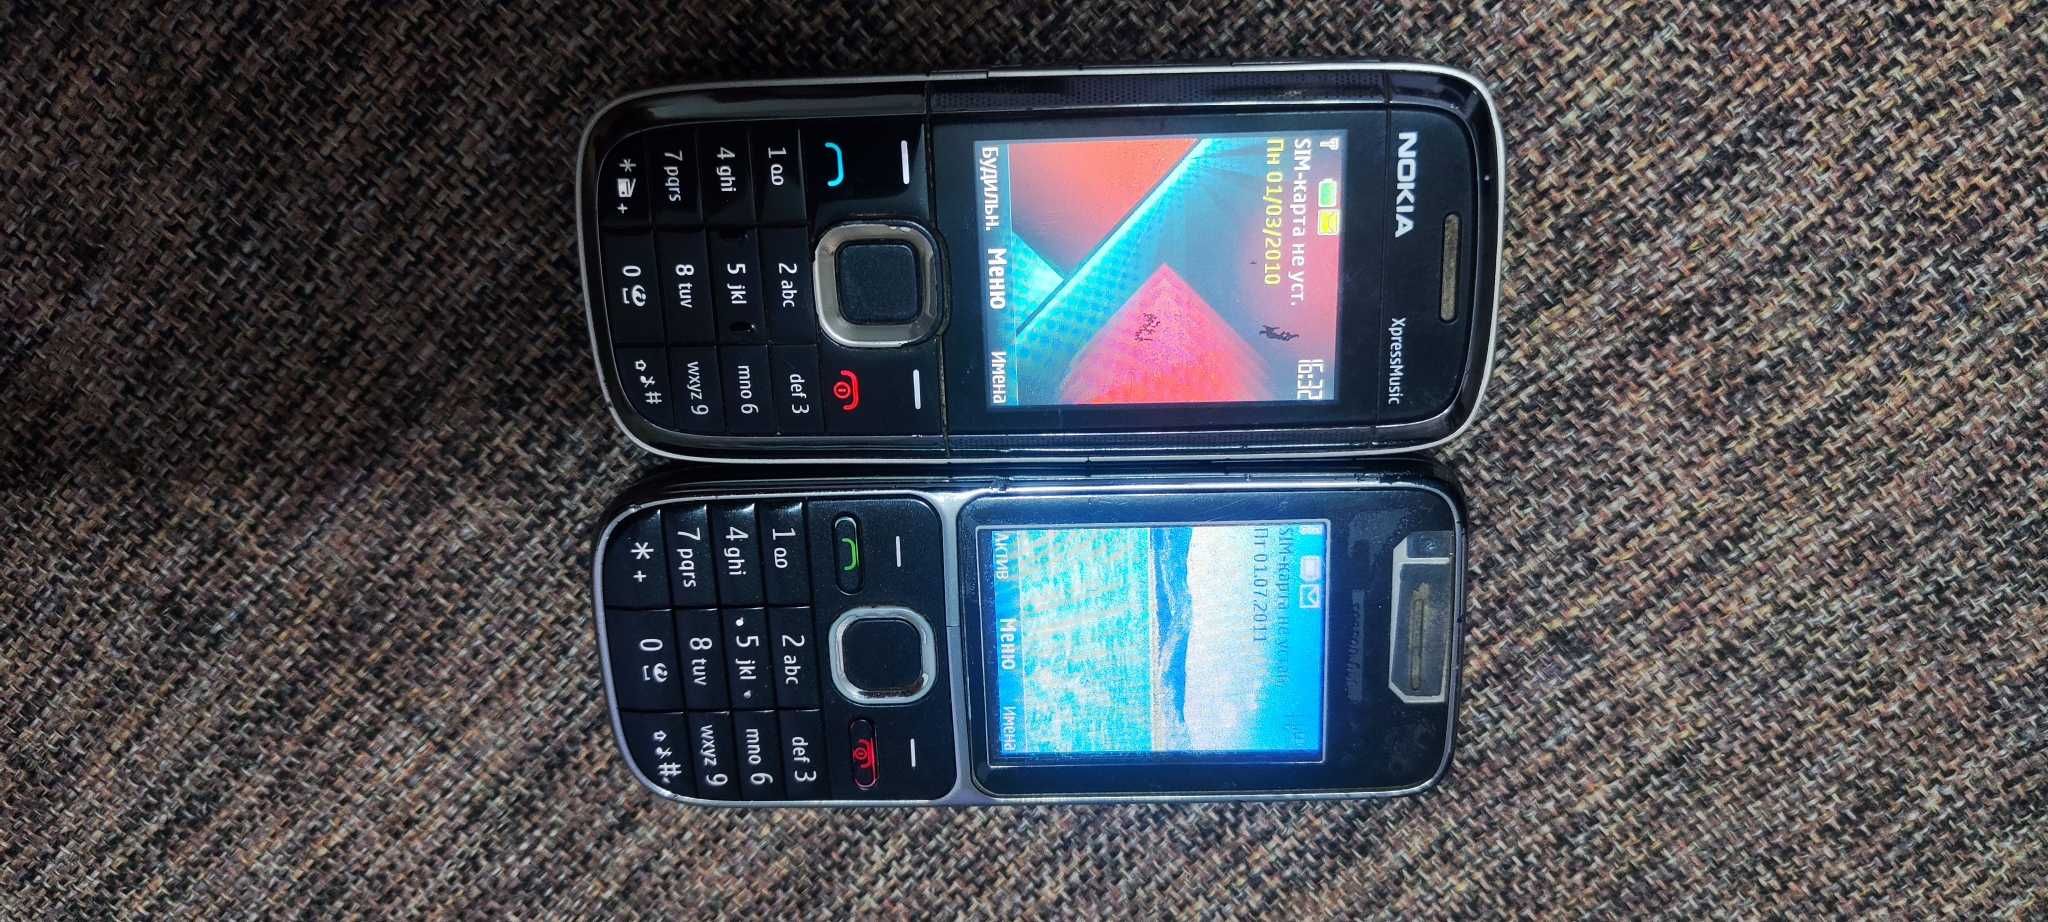 Nokia 2 телефона рабочие.